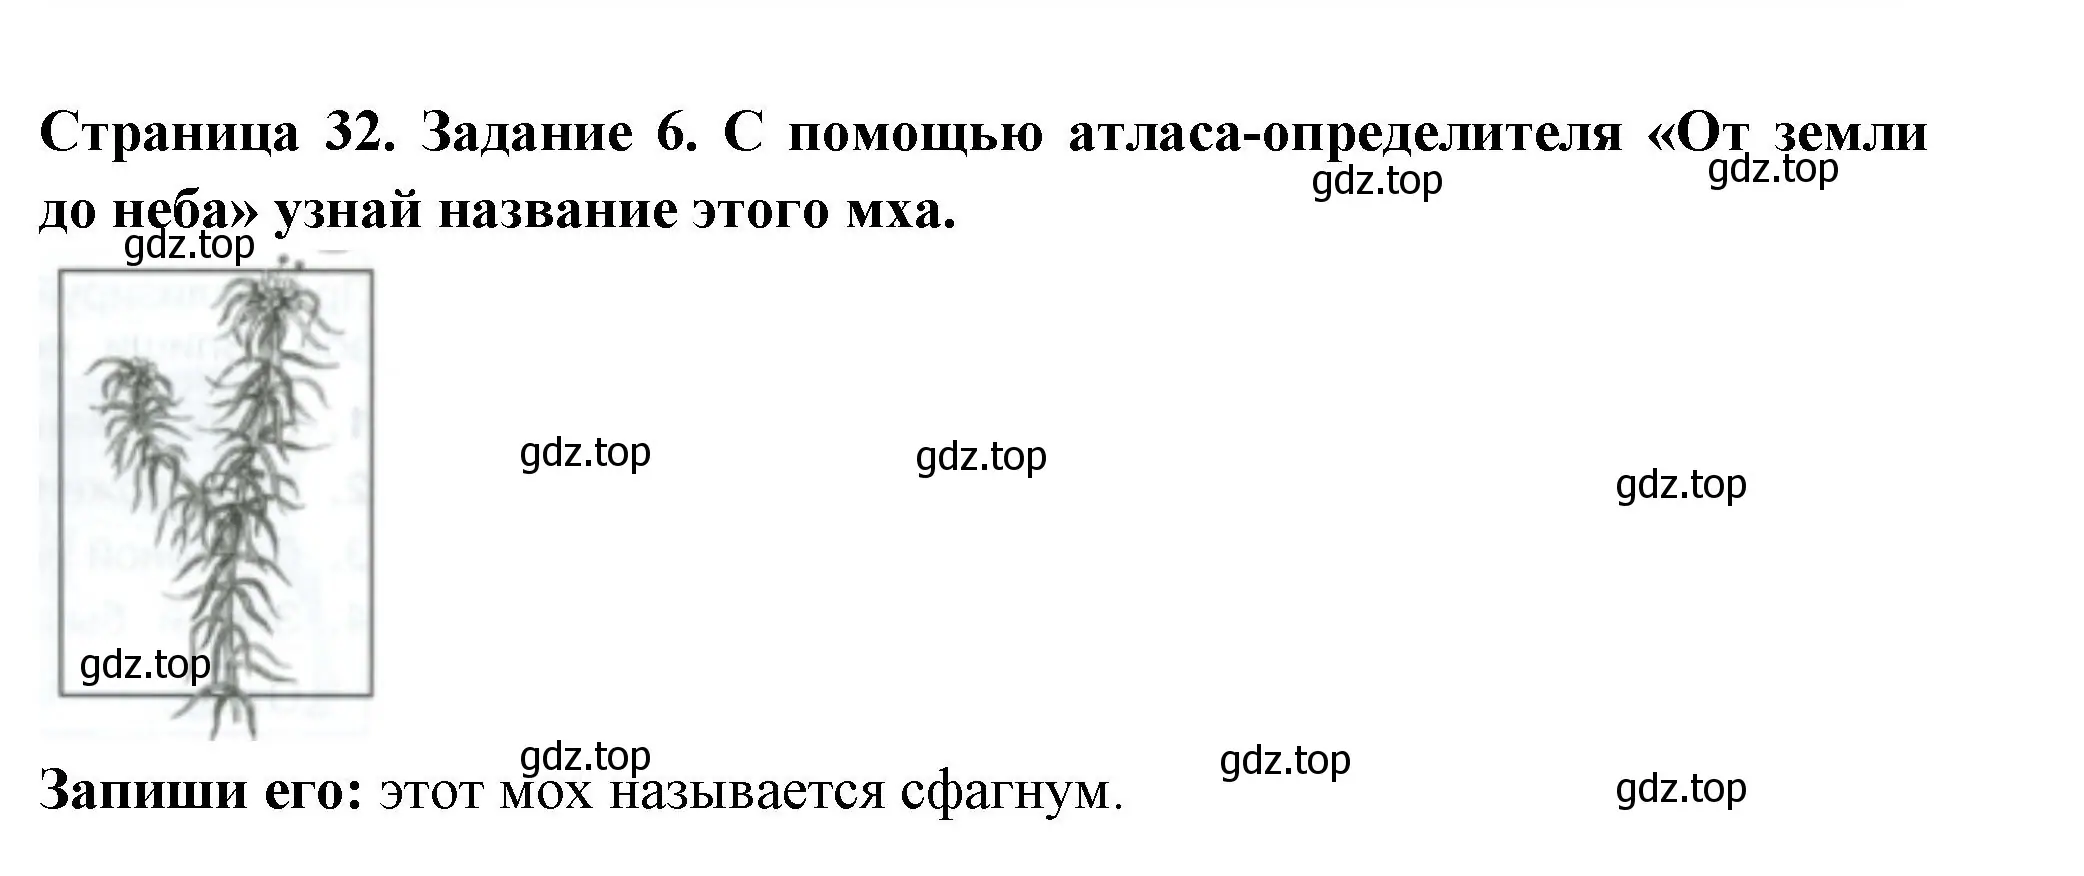 Решение номер 6 (страница 32) гдз по окружающему миру 4 класс Плешаков, Крючкова, проверочные работы